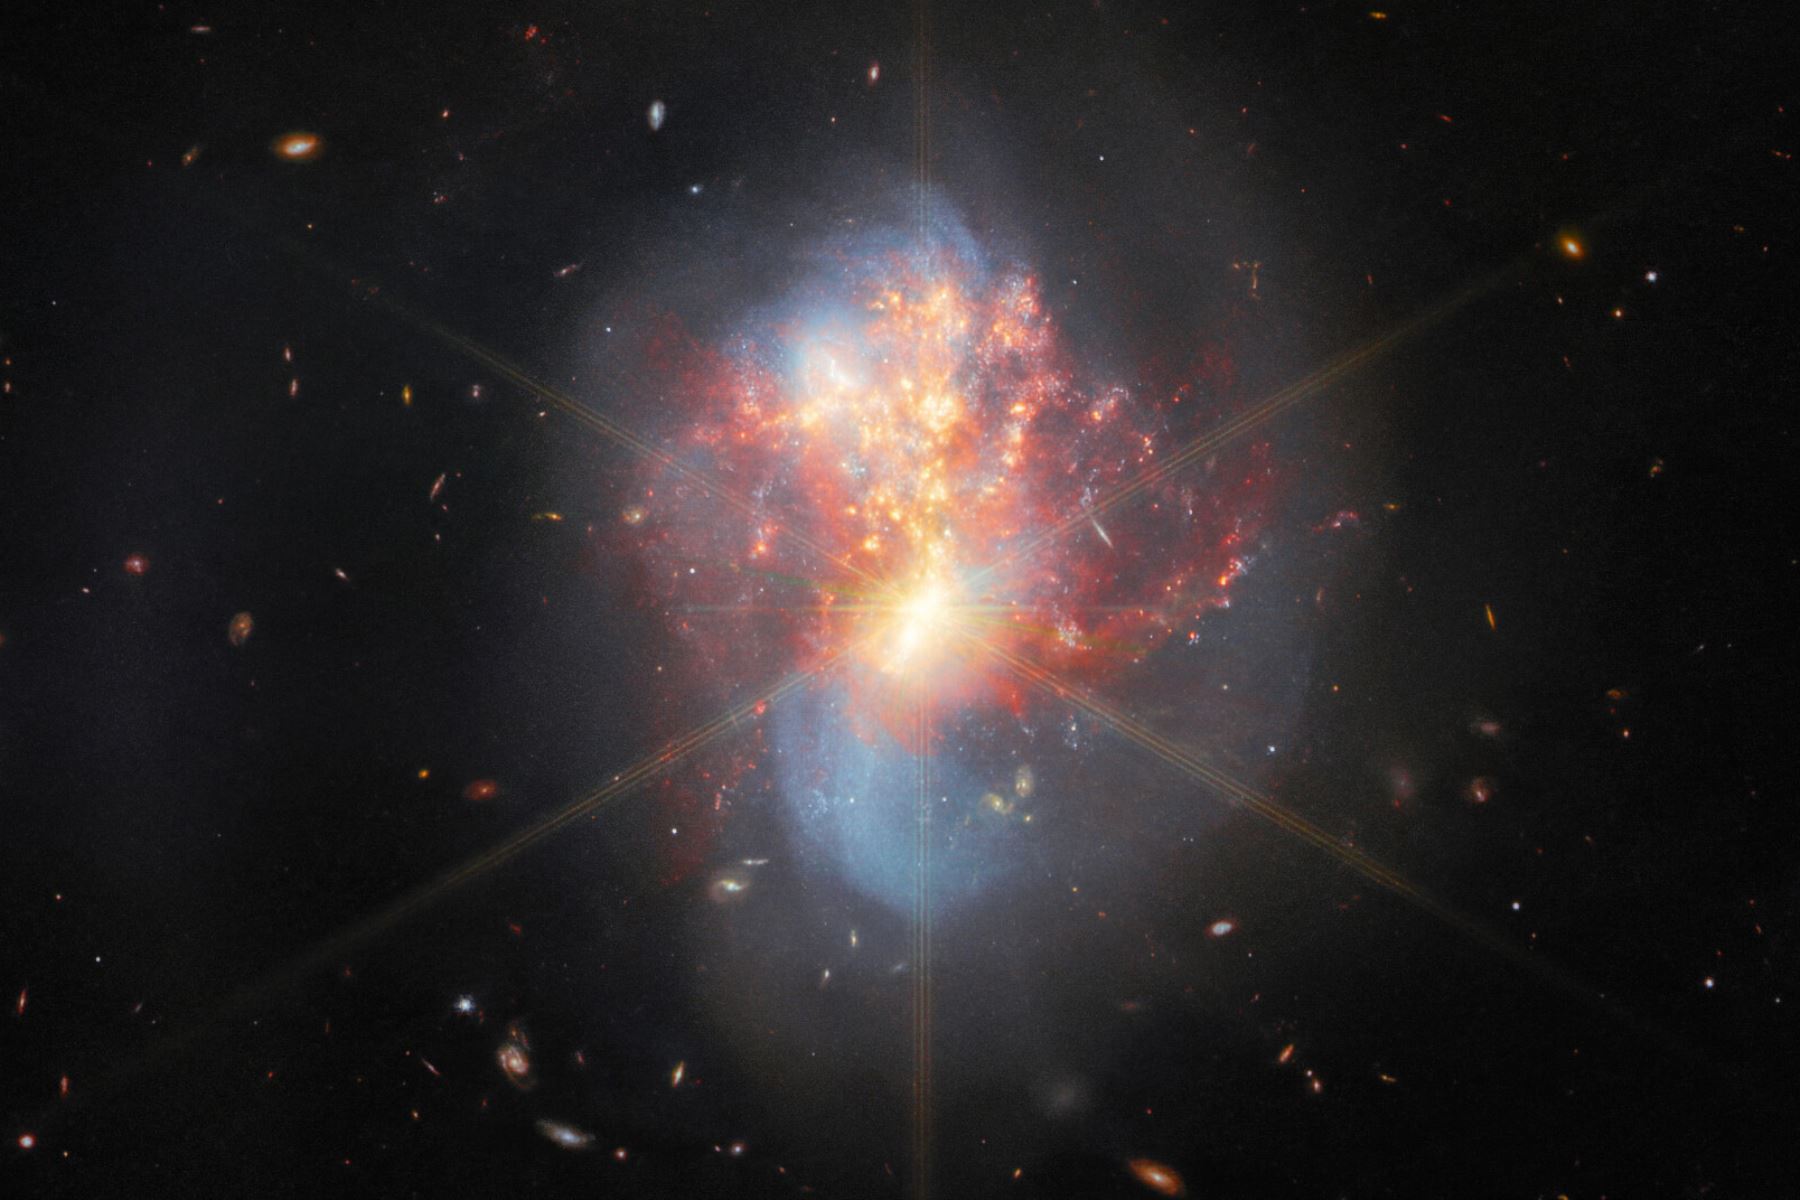 Las dos galaxias de IC 1623 se precipitan una hacia la otra. Su colisión ha provocado un frenesí de formación estelar, creando nuevas estrellas a un ritmo más de 20 veces mayor que el de la Vía Láctea. El ojo infrarrojo de Webb mira a través del espeso polvo, revelando detalles nunca antes vistos. Foto: @NASAWebb